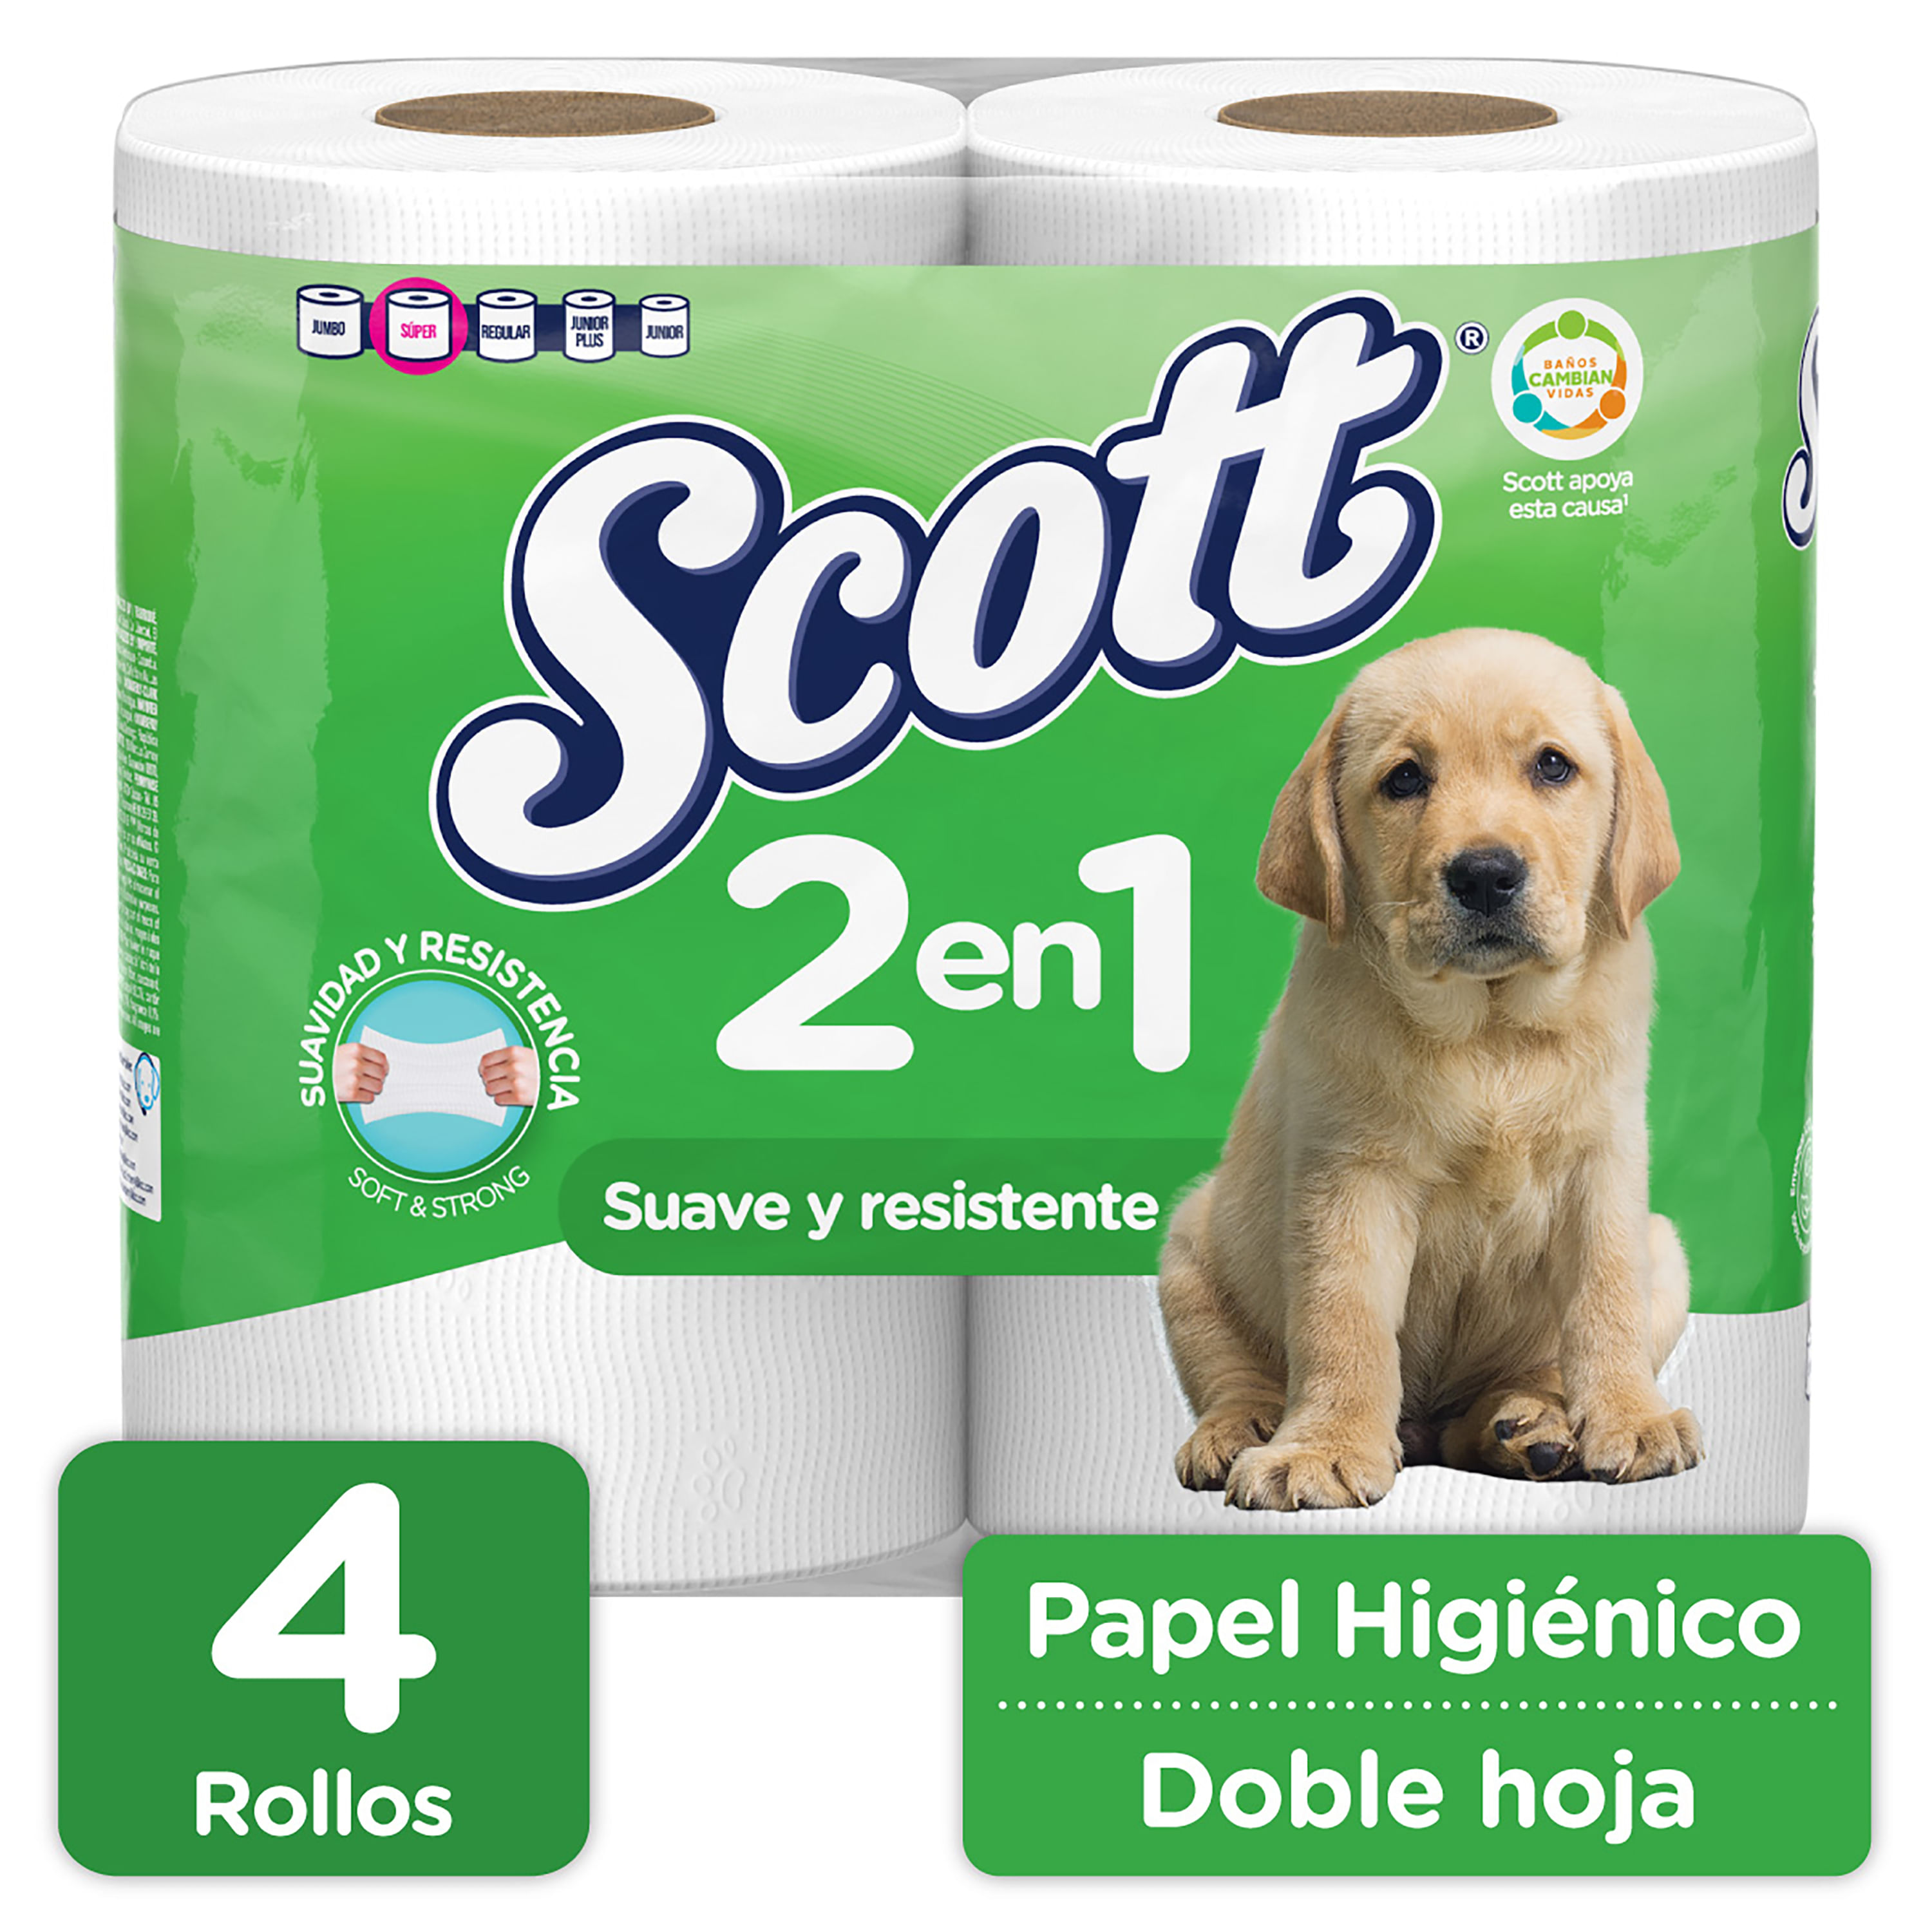 scottex dermo cuidado papel higienico 4+2 rollos - delaUz